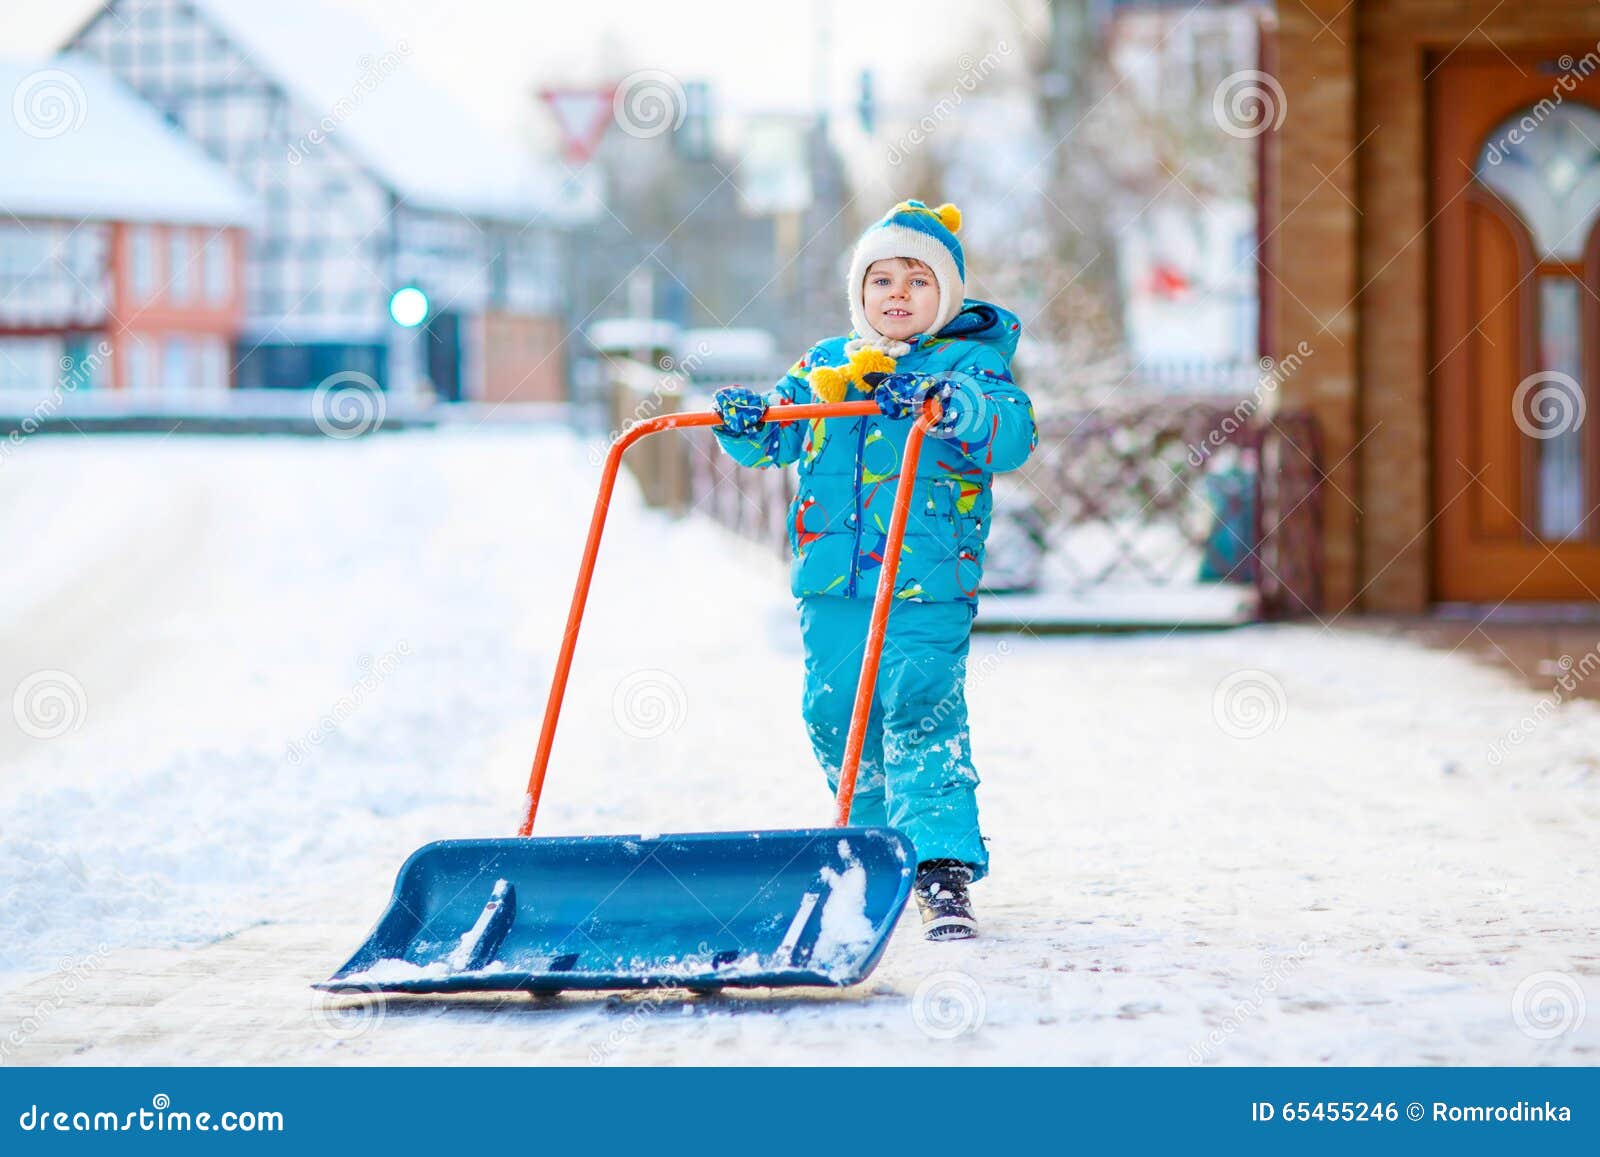 Мальчик маленького ребенка играя с снегом в зиме. Милый мальчик маленького ребенка в красочных одеждах зимы имея потеху с лопаткоулавливателем снега, outdoors во время снежностей Active отдых outdoors с детьми в зиме Счастливый ребенок с теплой шляпой, перчатками, модой зимы